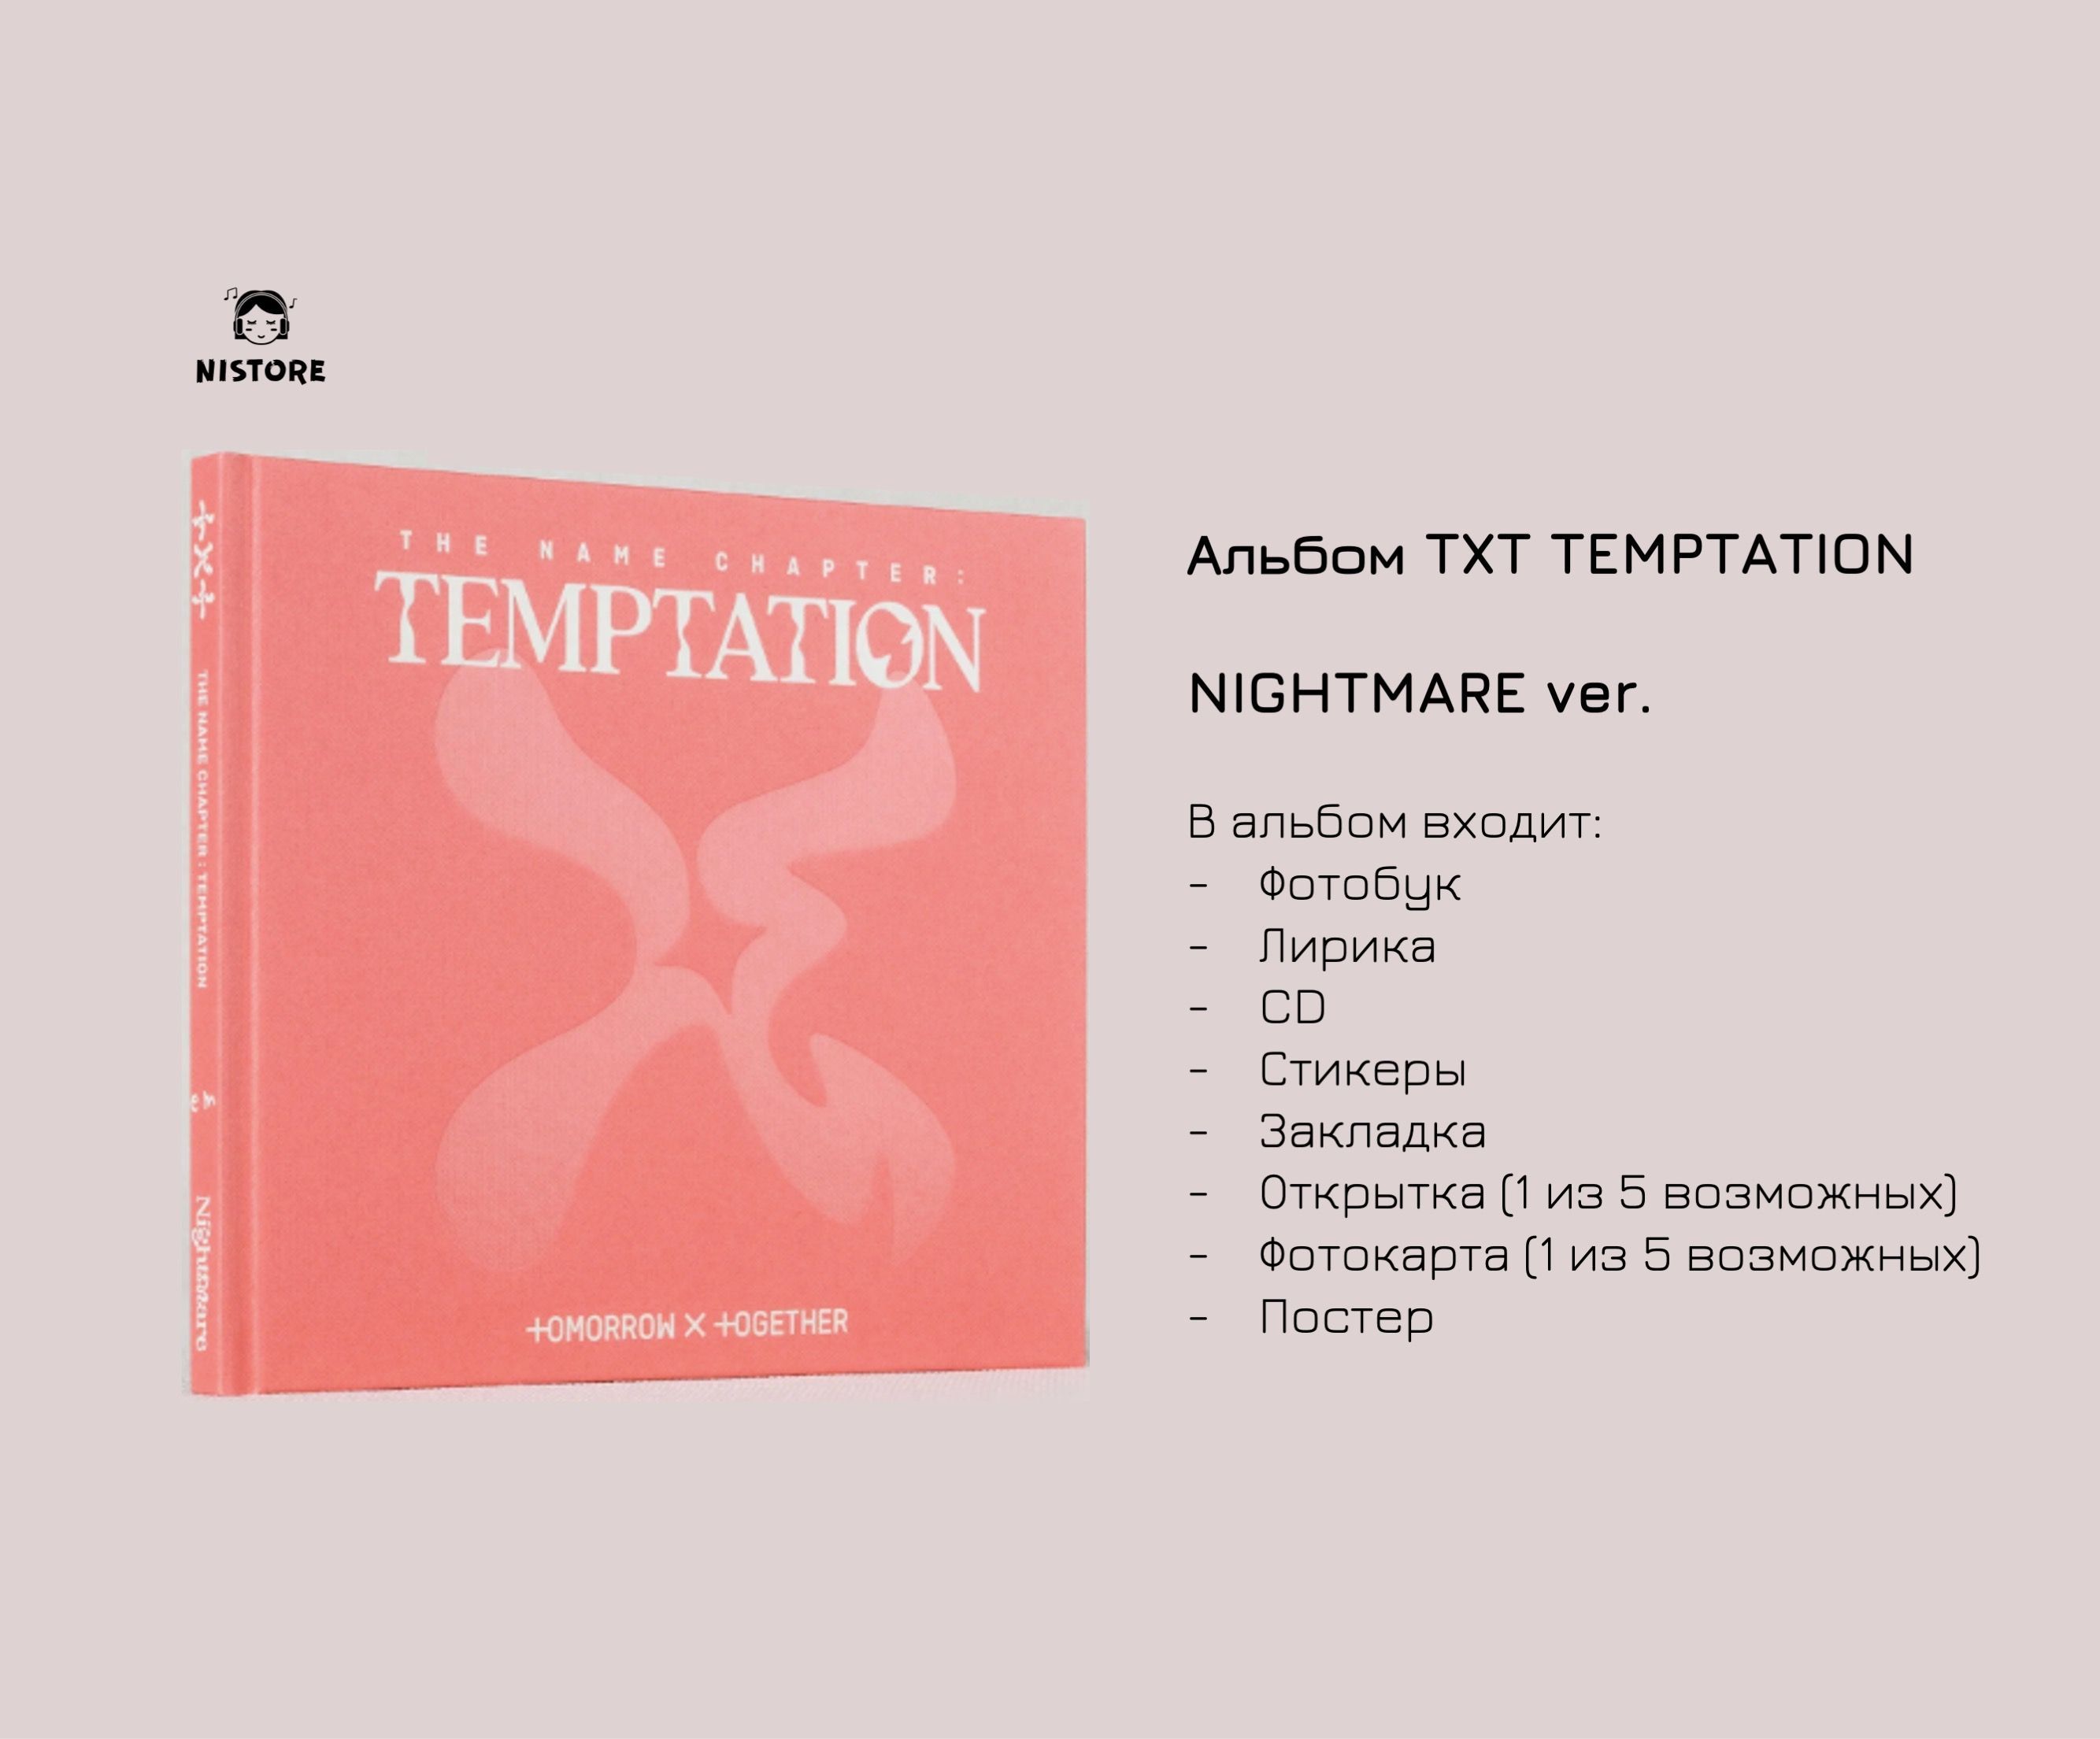 Альбом тхт. Альбом тхт Temptation. Txt the name Chapter Temptation альбом. Альбом тхт-Чаптер. Альбомы тхт песни